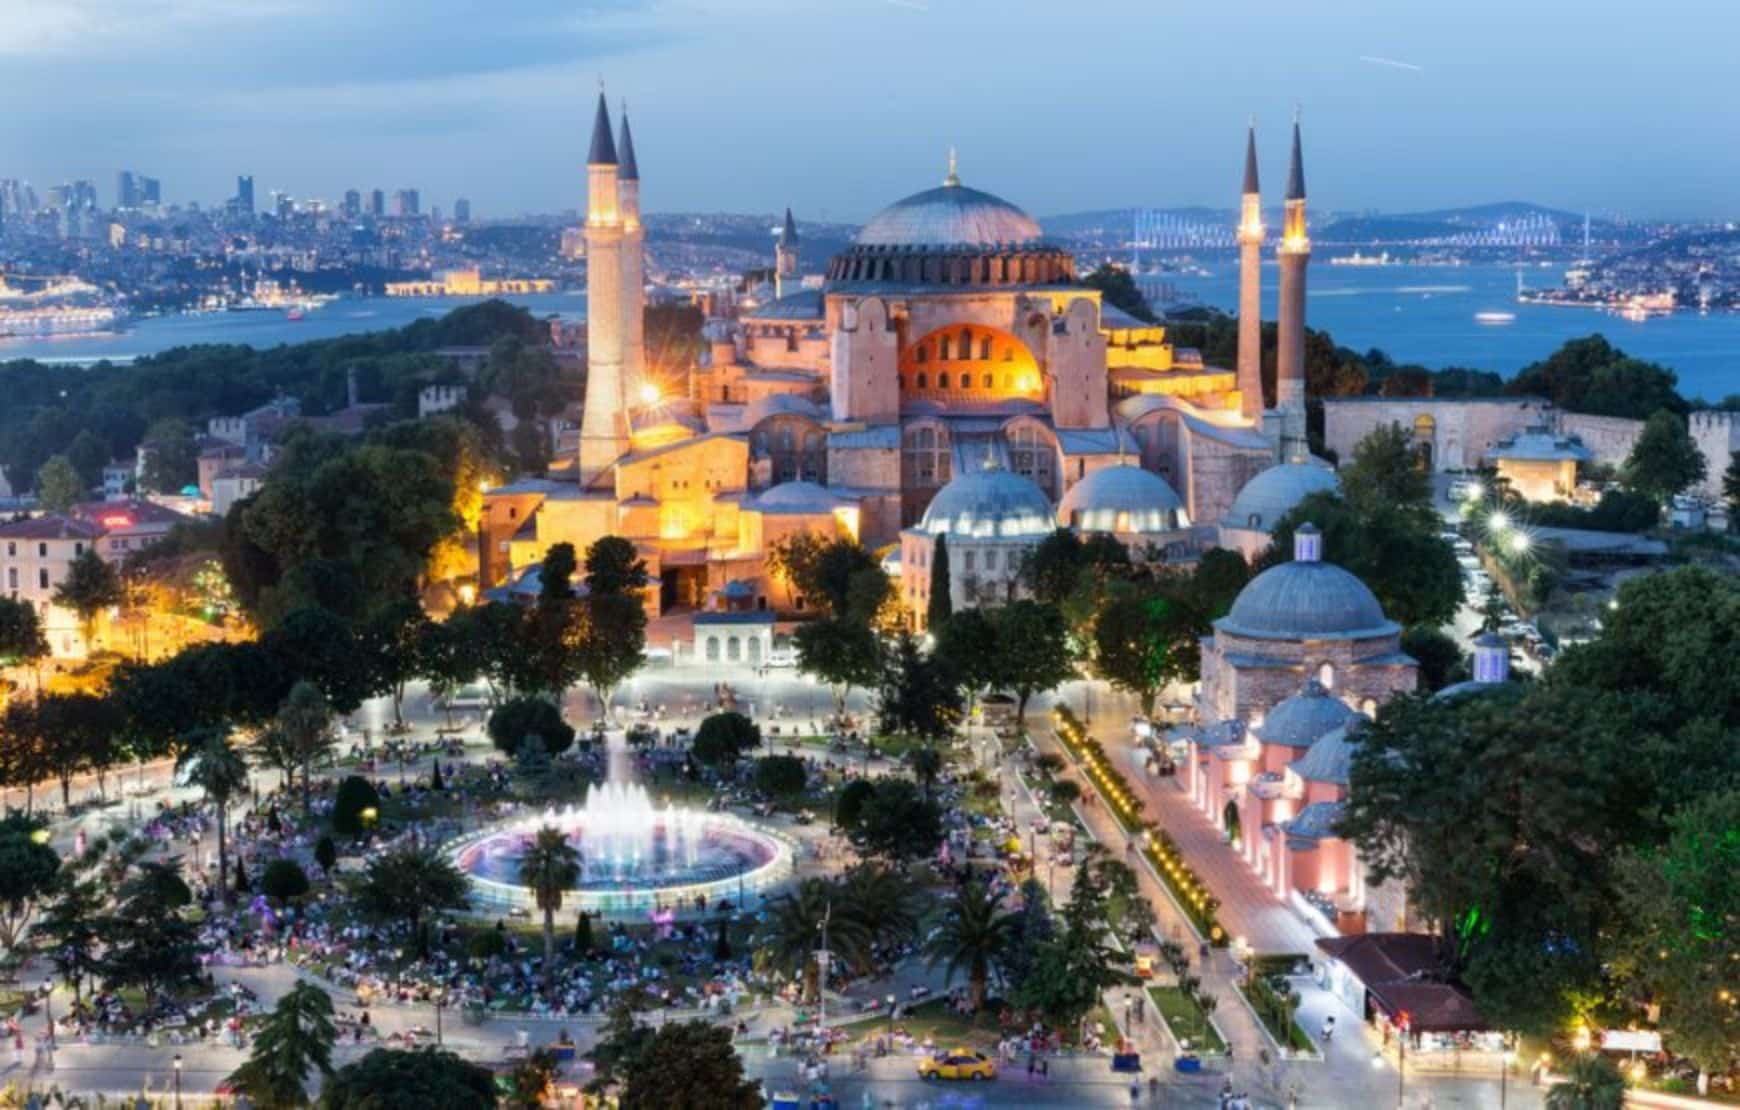 Hagia Sophia aerial view